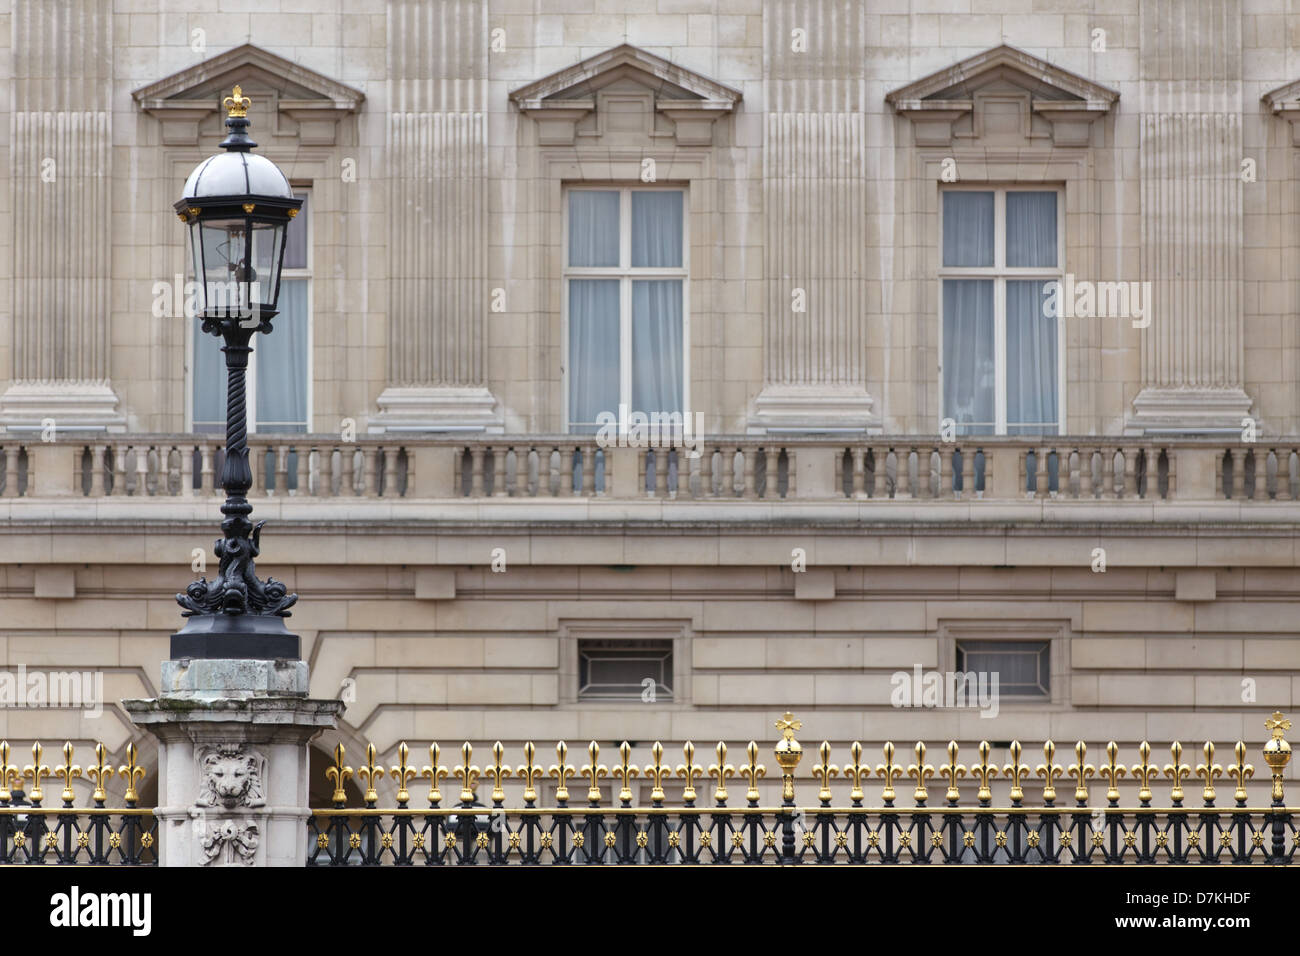 Buckingham Palace architecture detail, London, United Kingdom Stock Photo